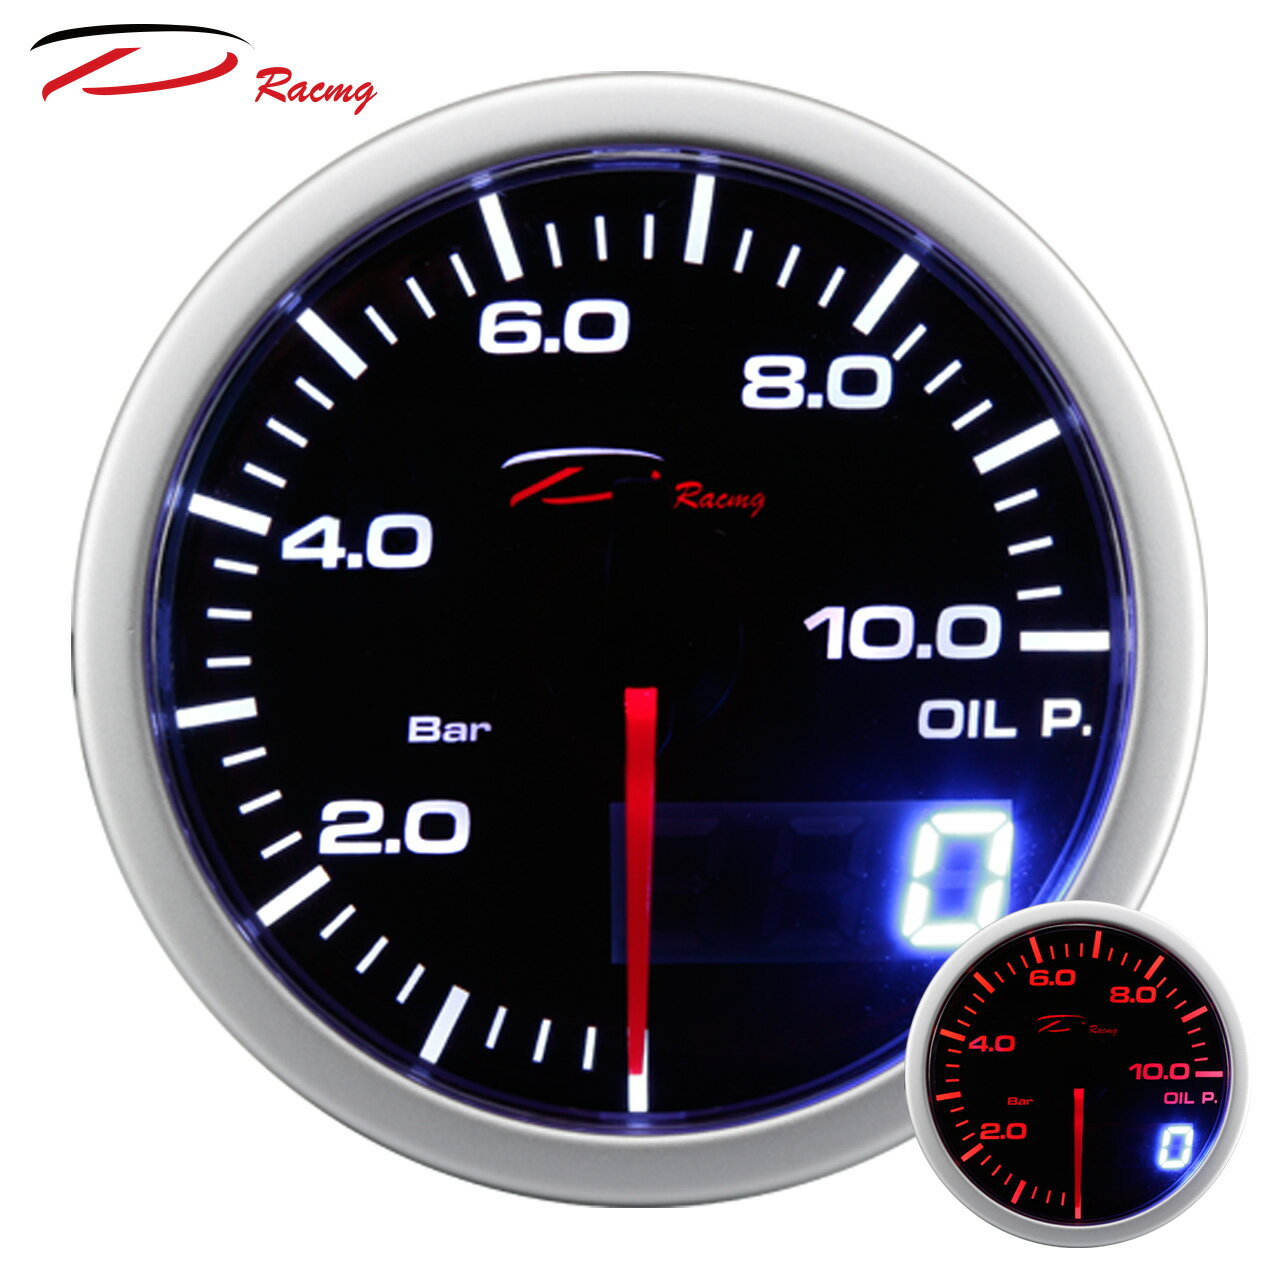 【D Racing三環錶/改裝錶】60mm油壓錶 OIL PRESSURE。Dual View 指針+數字雙顯示系列。錶頭無設定功能。